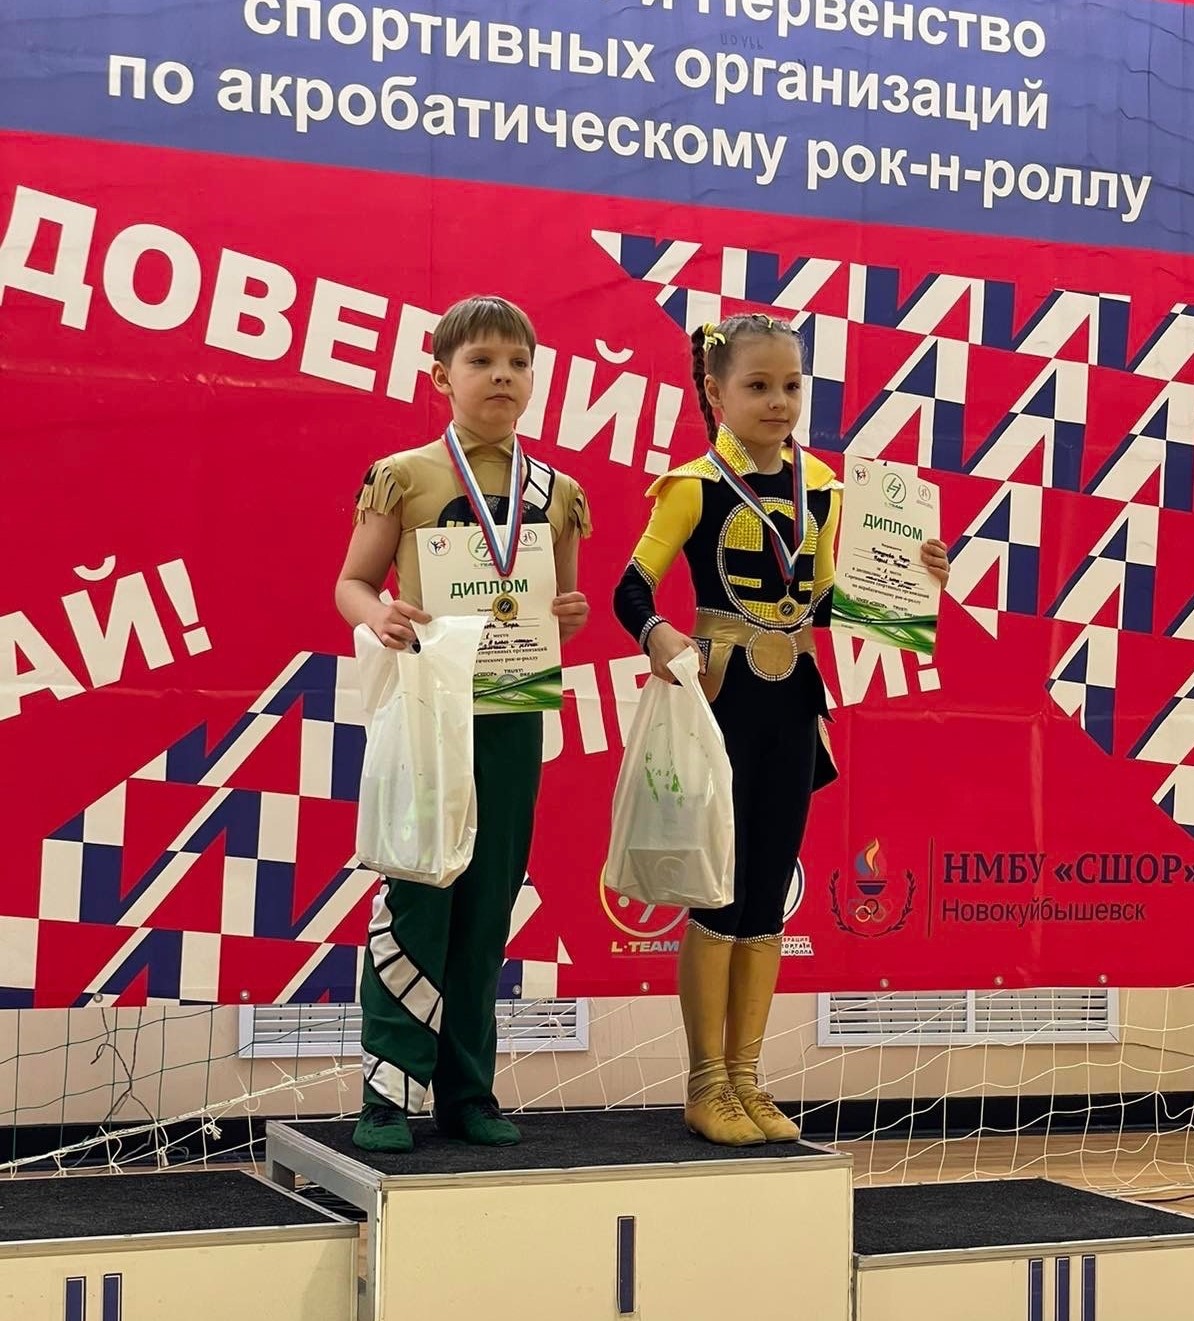 Кочкурова Кира в турнире по акробатическому рок-н-роллу награждена двумя золотыми медалями.